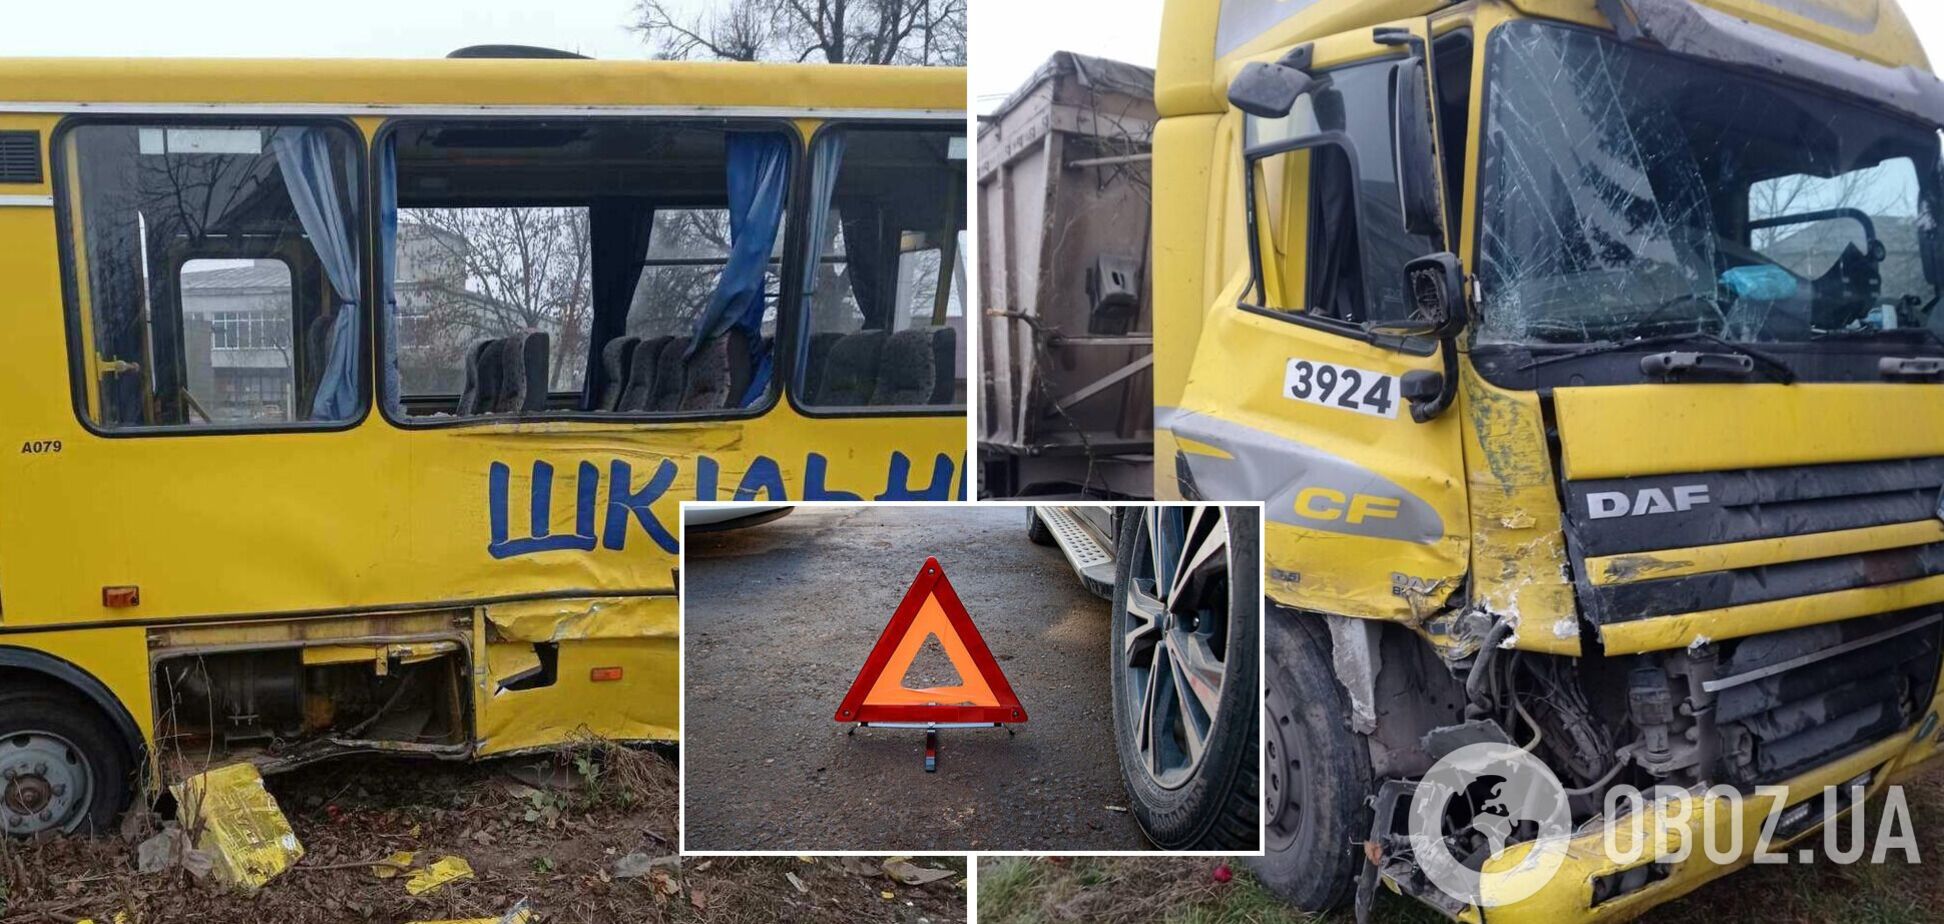 Во Львовской области грузовик влетел в школьный автобус, дети с травмами попали в больницу. Фото